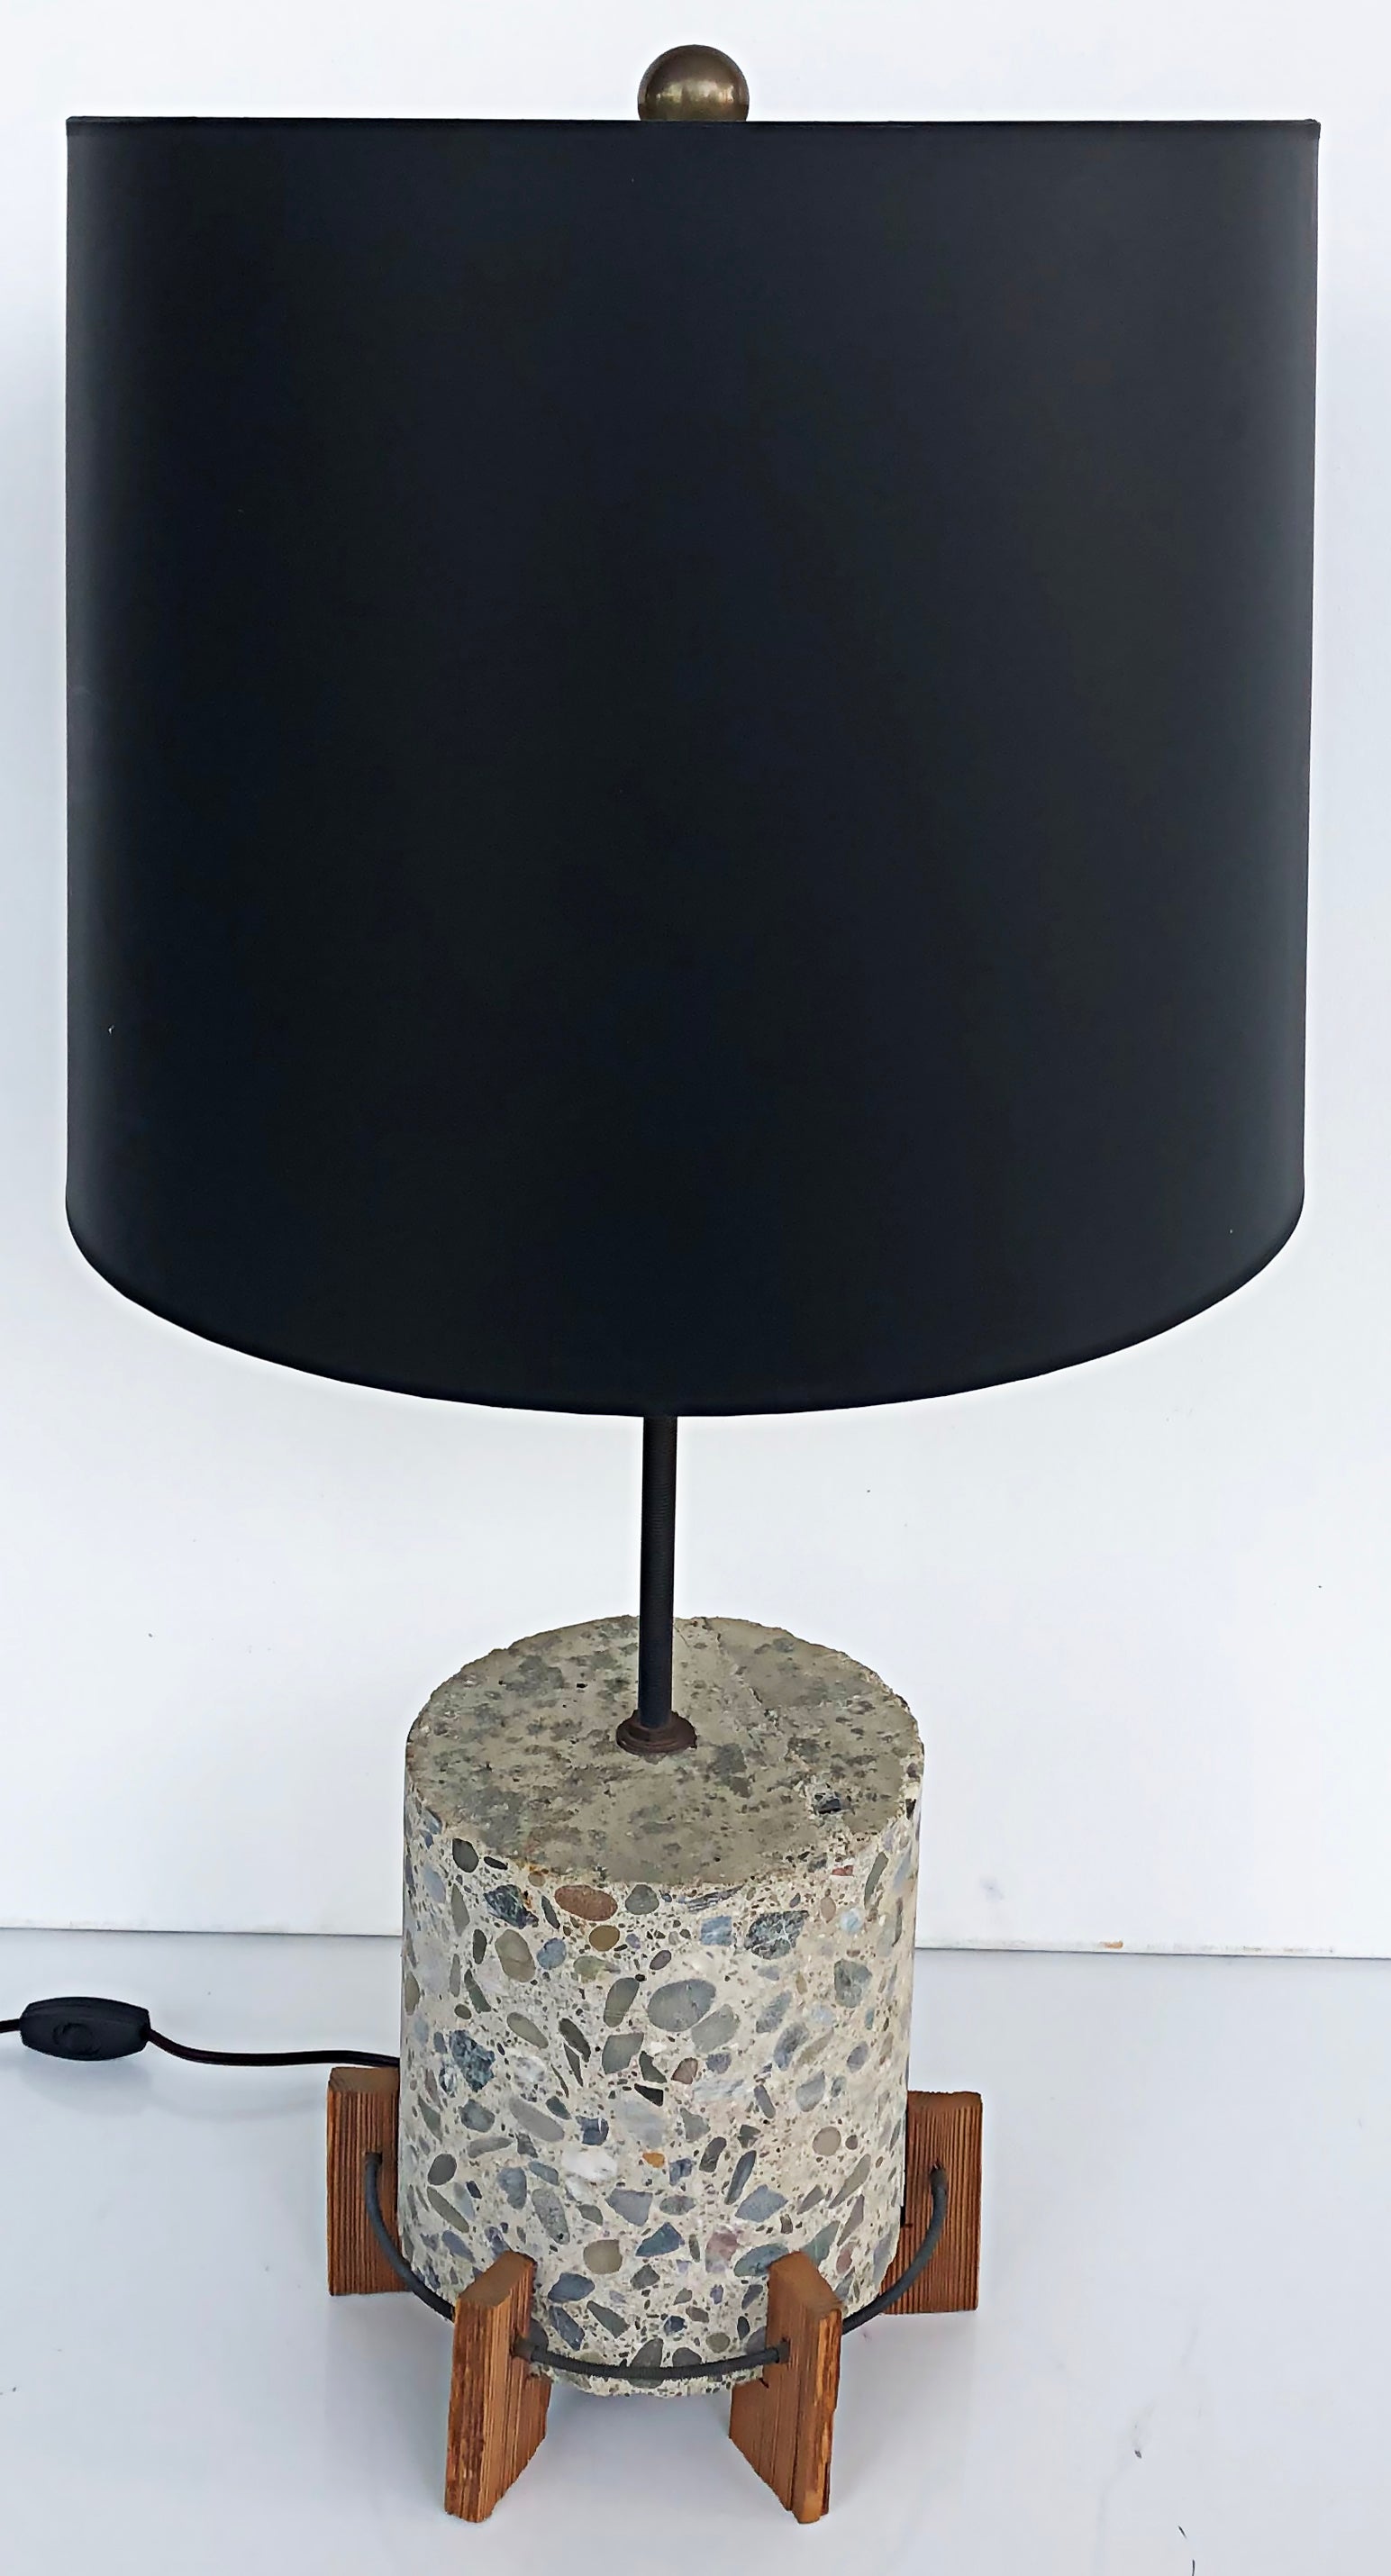 Vintage Richard Lee Parker Studio lampe de table en bois terrazzo, signée 1992.

Nous proposons à la vente une lampe de table en bois et Terrazzo de studio vintage. La lampe a une touche industrielle et est quelque peu rustique. Cette pièce unique